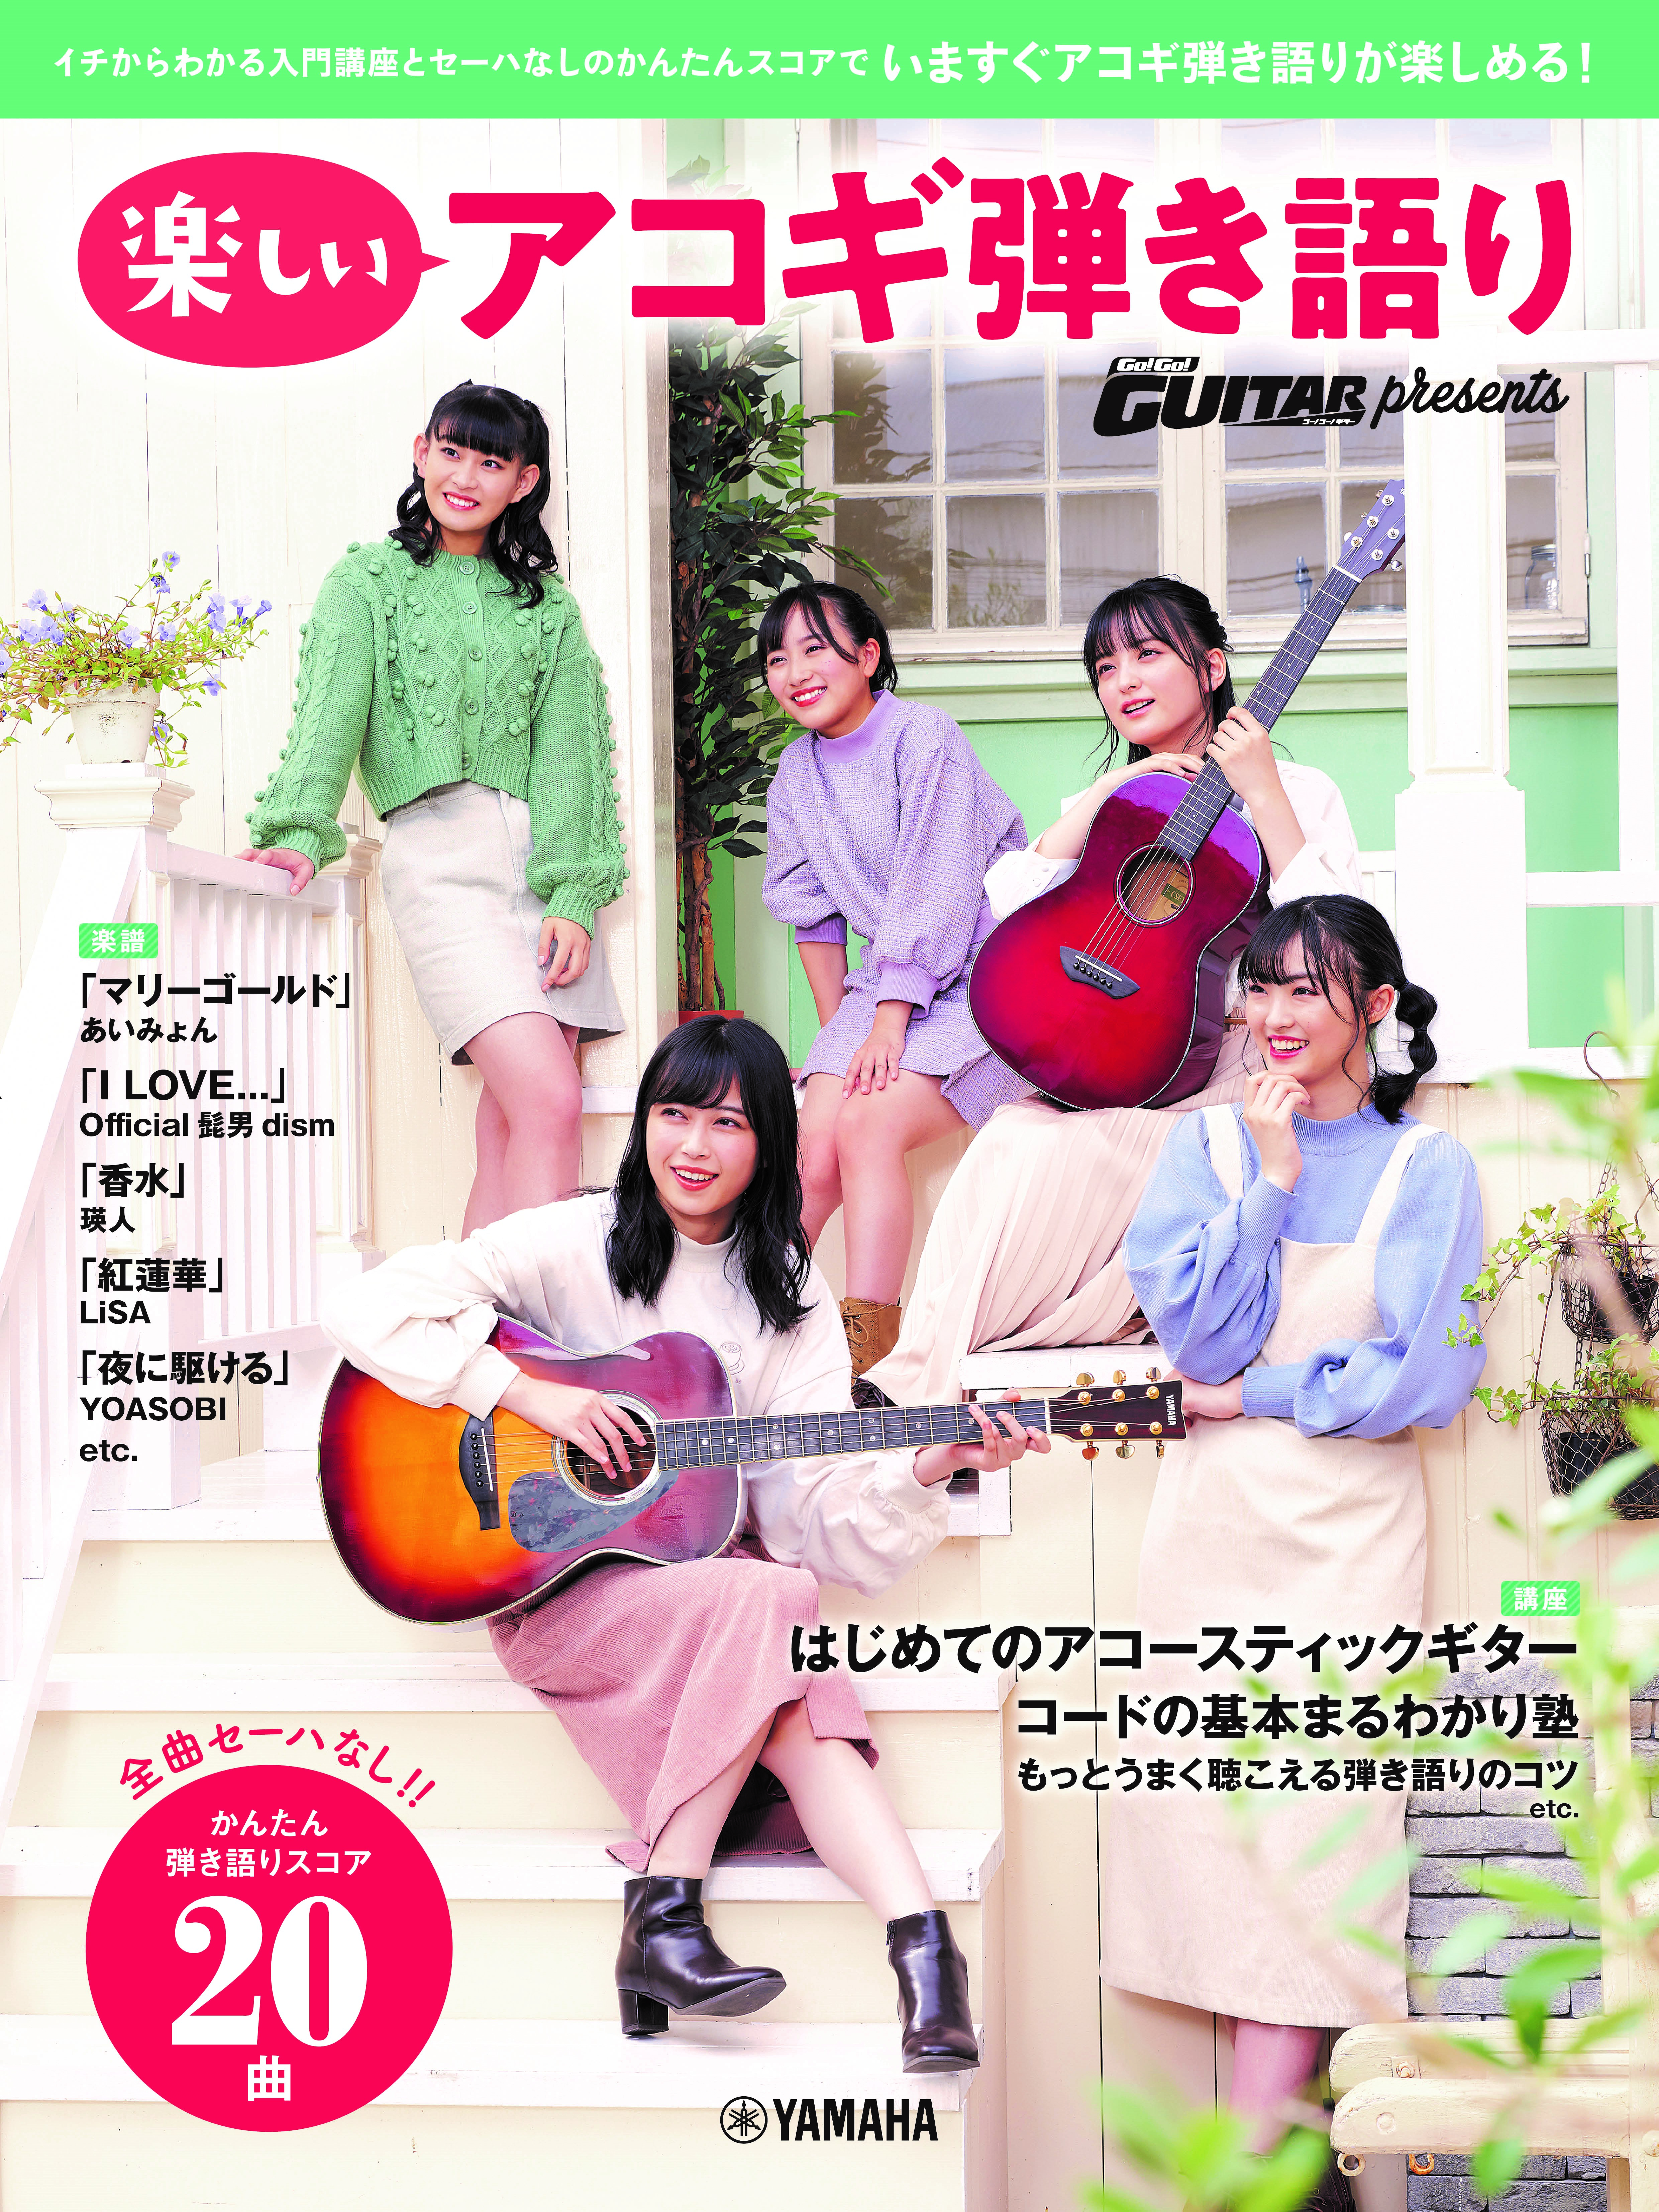 ヤマハムックシリーズ4 Go Go Guitar Presents 楽しいアコギ弾き語り 年11月16日発売 Newscast